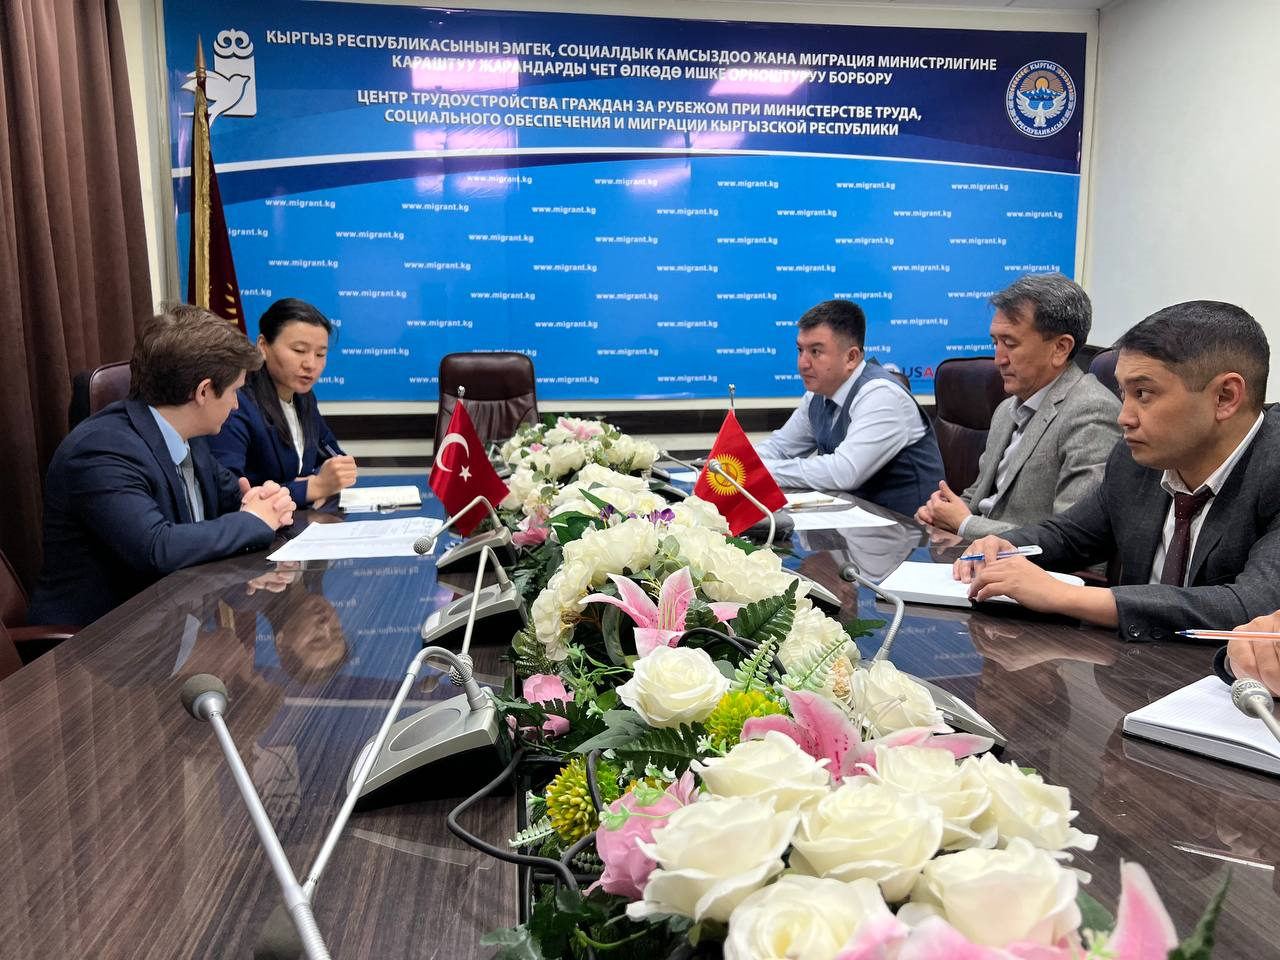 Встреча руководства Центра с Консулом Турецкой Республики в Кыргызской Республике: Укрепление сотрудничества